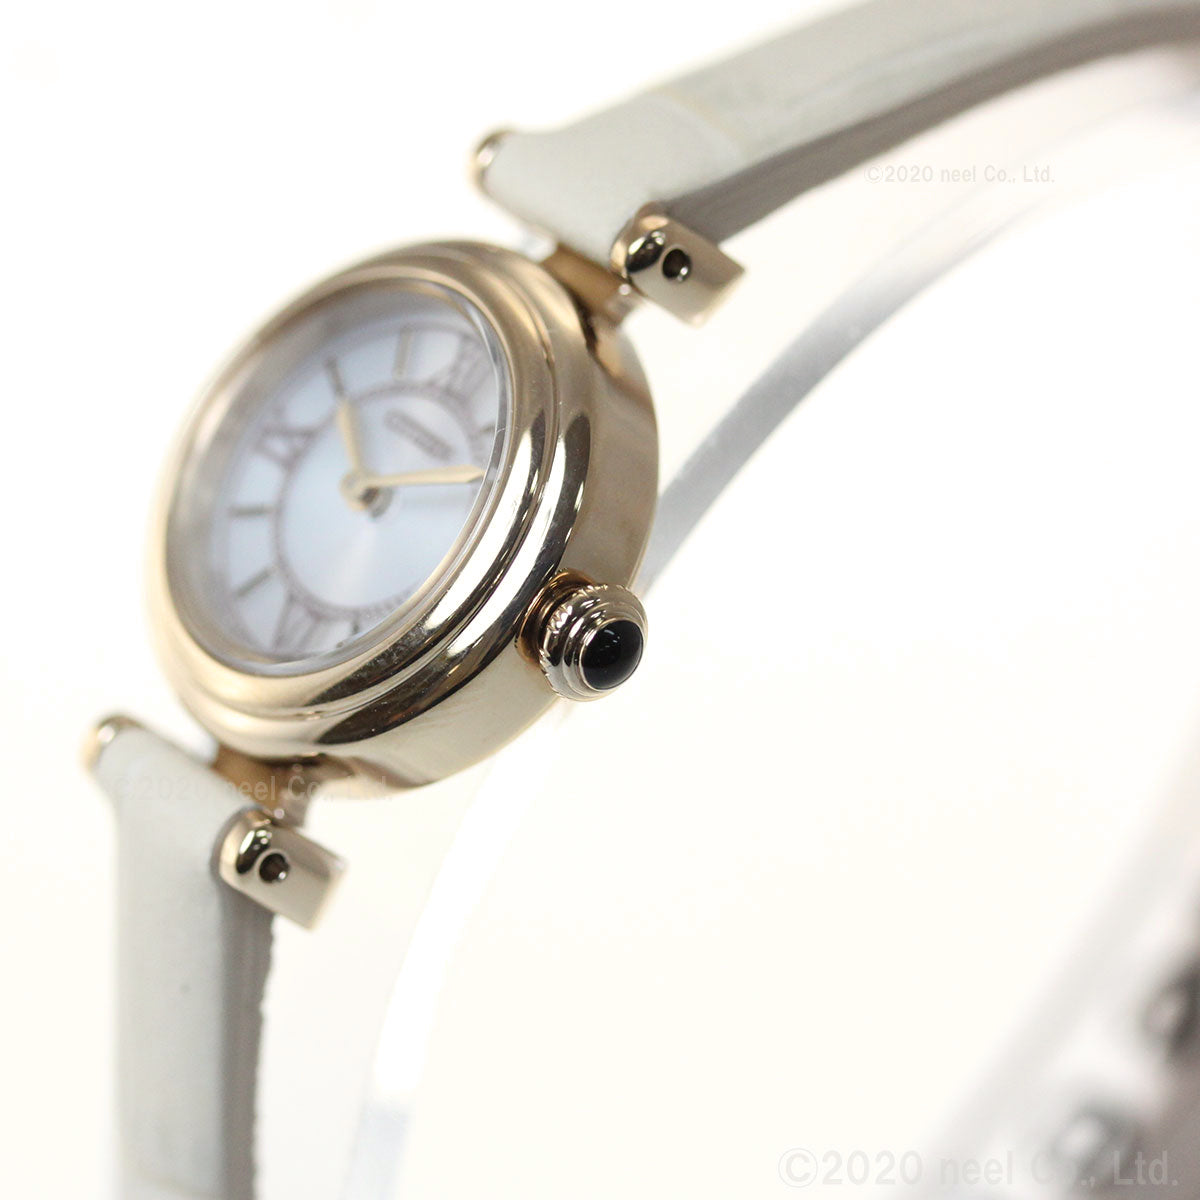 シチズン キー CITIZEN Kii: エコドライブ ラウンドモデル 腕時計 レディース EG7082-07A